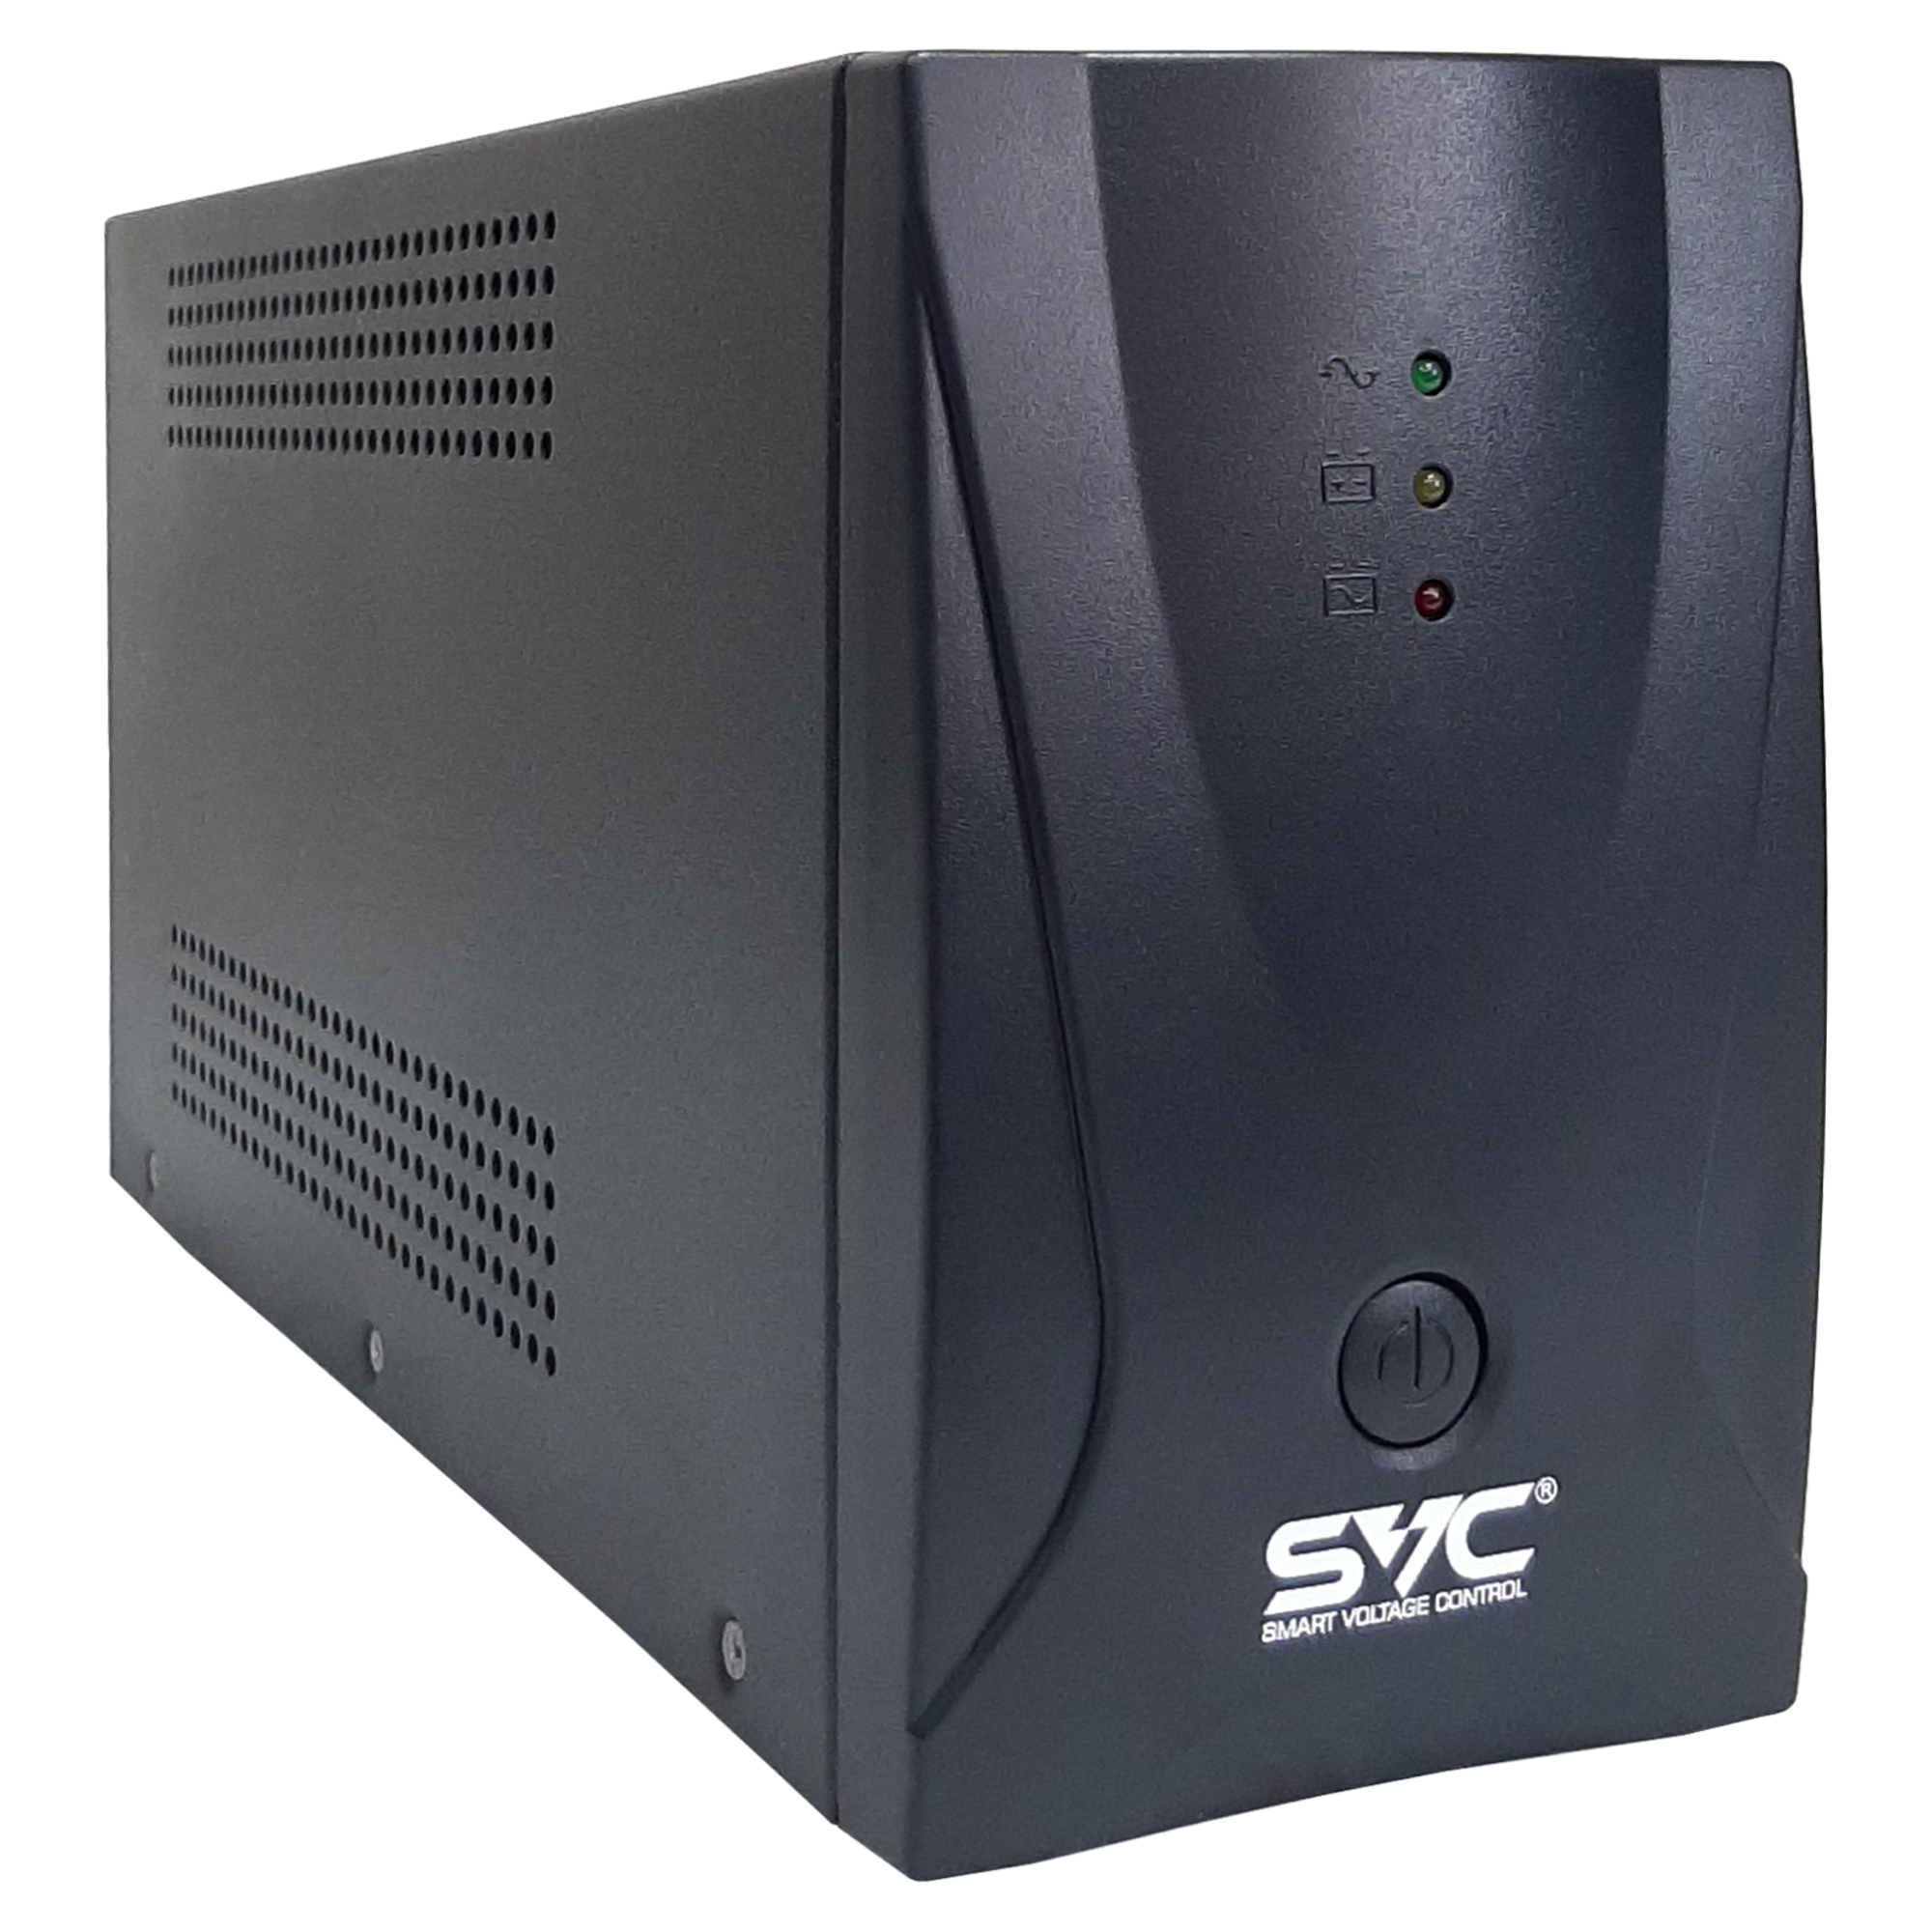 ИБП SVC V-650-R/M4C13, 650 VA, 390 Вт, IEC, розеток - 5, черный (V-650-R/M4C13)